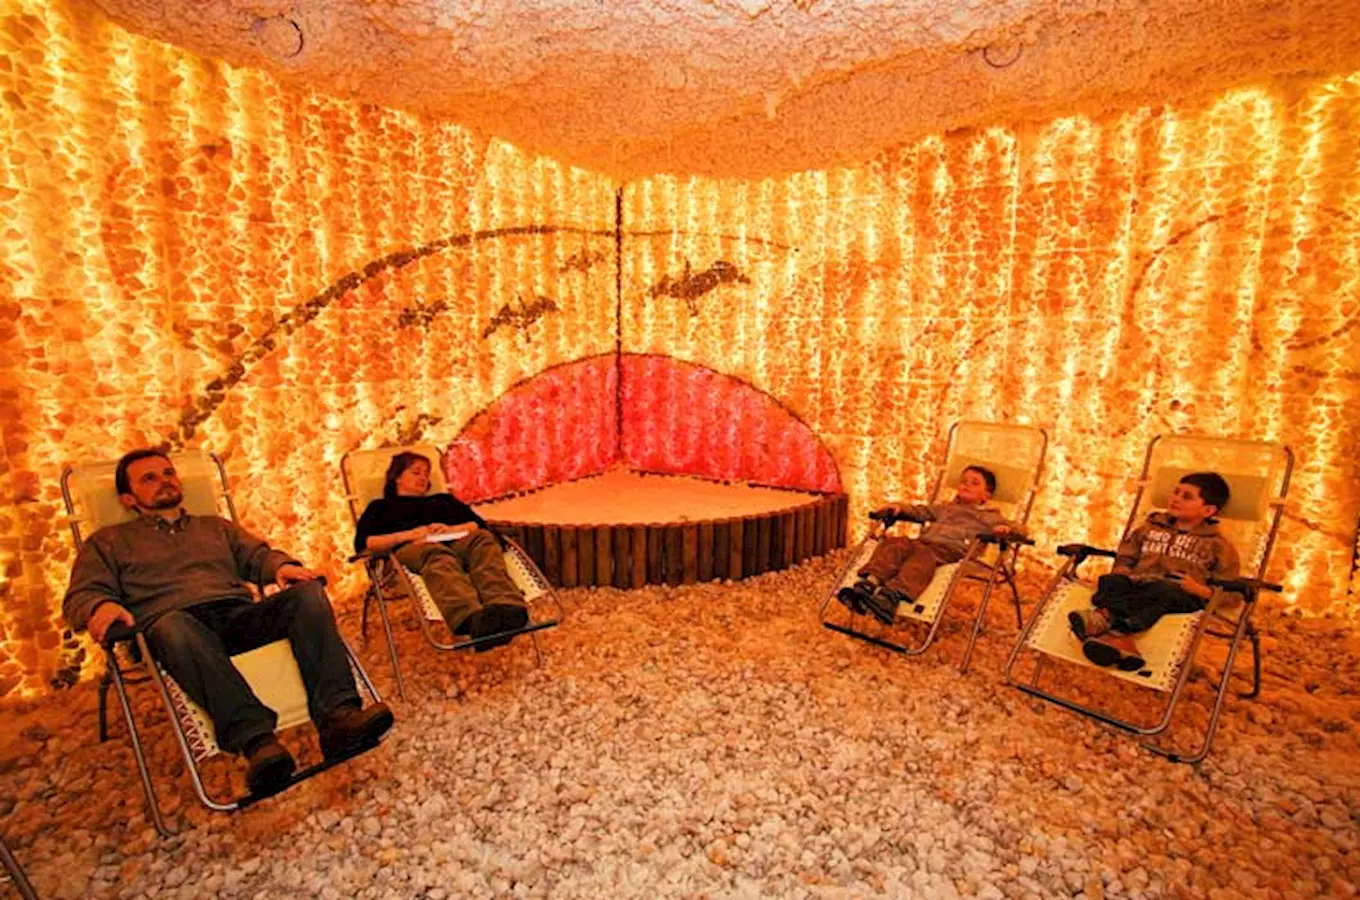 Solná jeskyně v Konstantinových Lázních